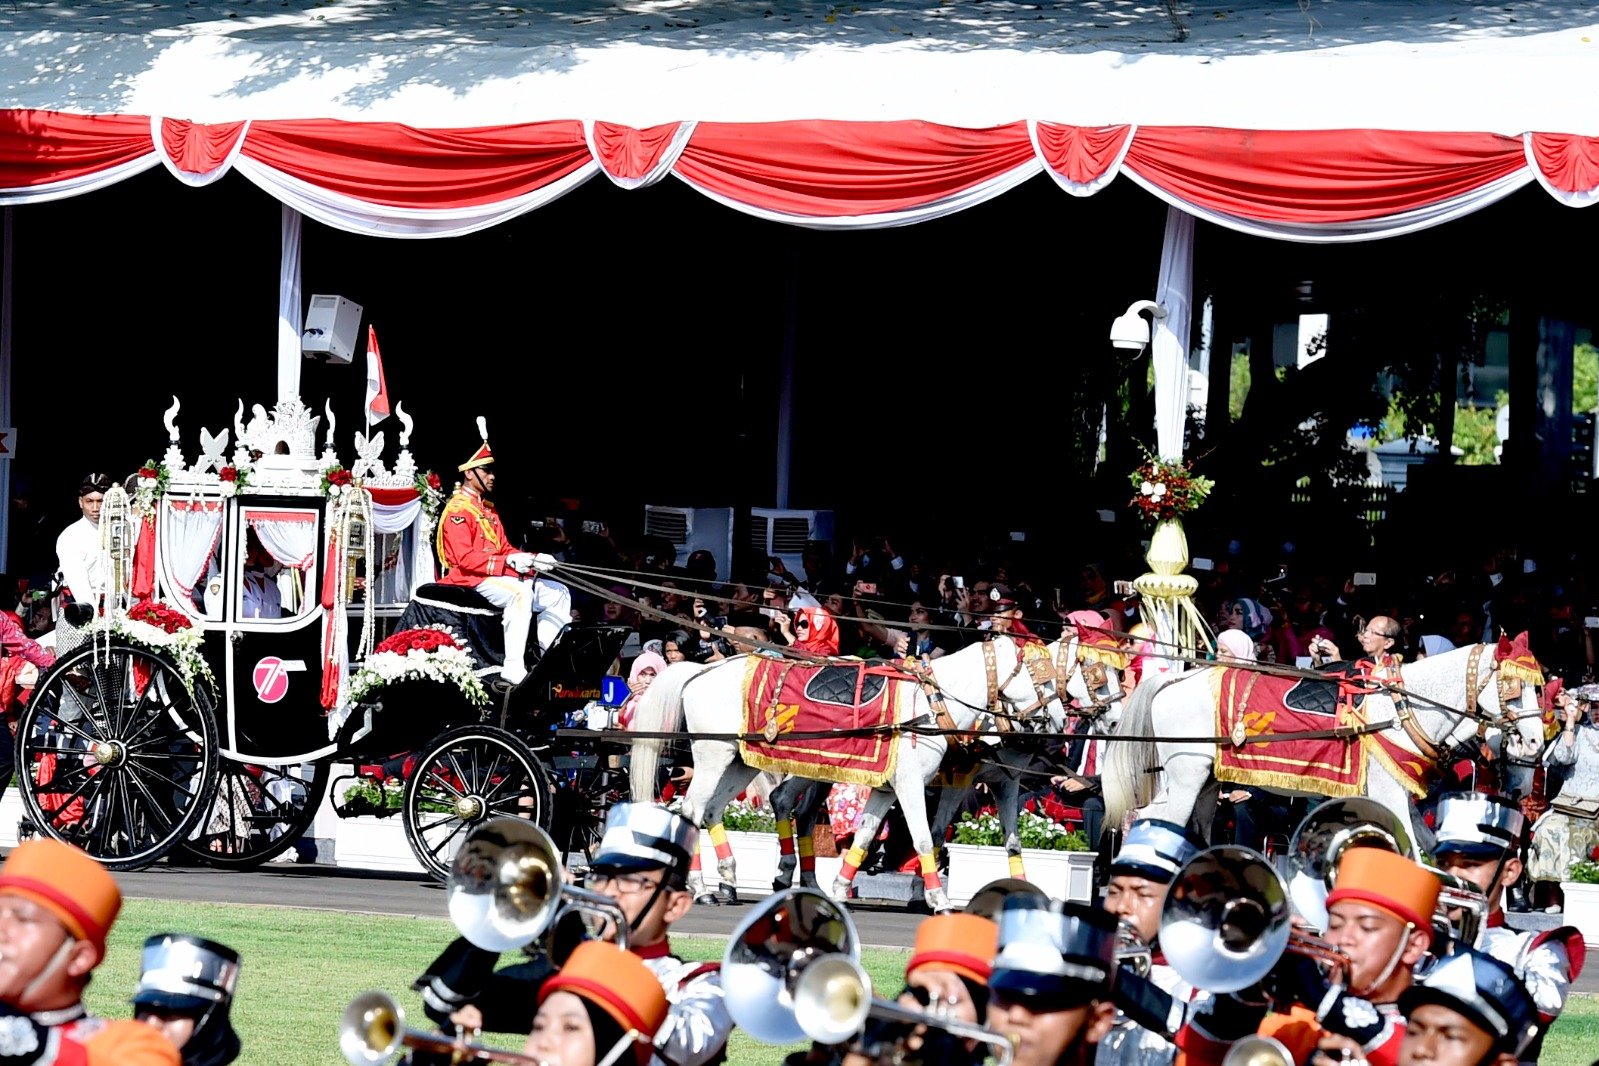 Pasukan Pengamanan Presiden (Paspampres) mengendarai Kereta Kencana Ki Jaga Raksa yang membawa Bendera Pusaka Merah Putih dan Teks Proklamsi ketika Parade Kirab Bendera Merah Putih dari Monas menuju Istana Merdeka di Jakarta, Rabu (17/8). Parade Kirab yang membawa duplikat Bendera Pusaka Merah Putih dan Teks Proklamasi tersebut menjadi salah satu daya tarik utama pada Peringatan Hari Kemerdekaan ke-71 Republik Indonesia Tahun 2016.